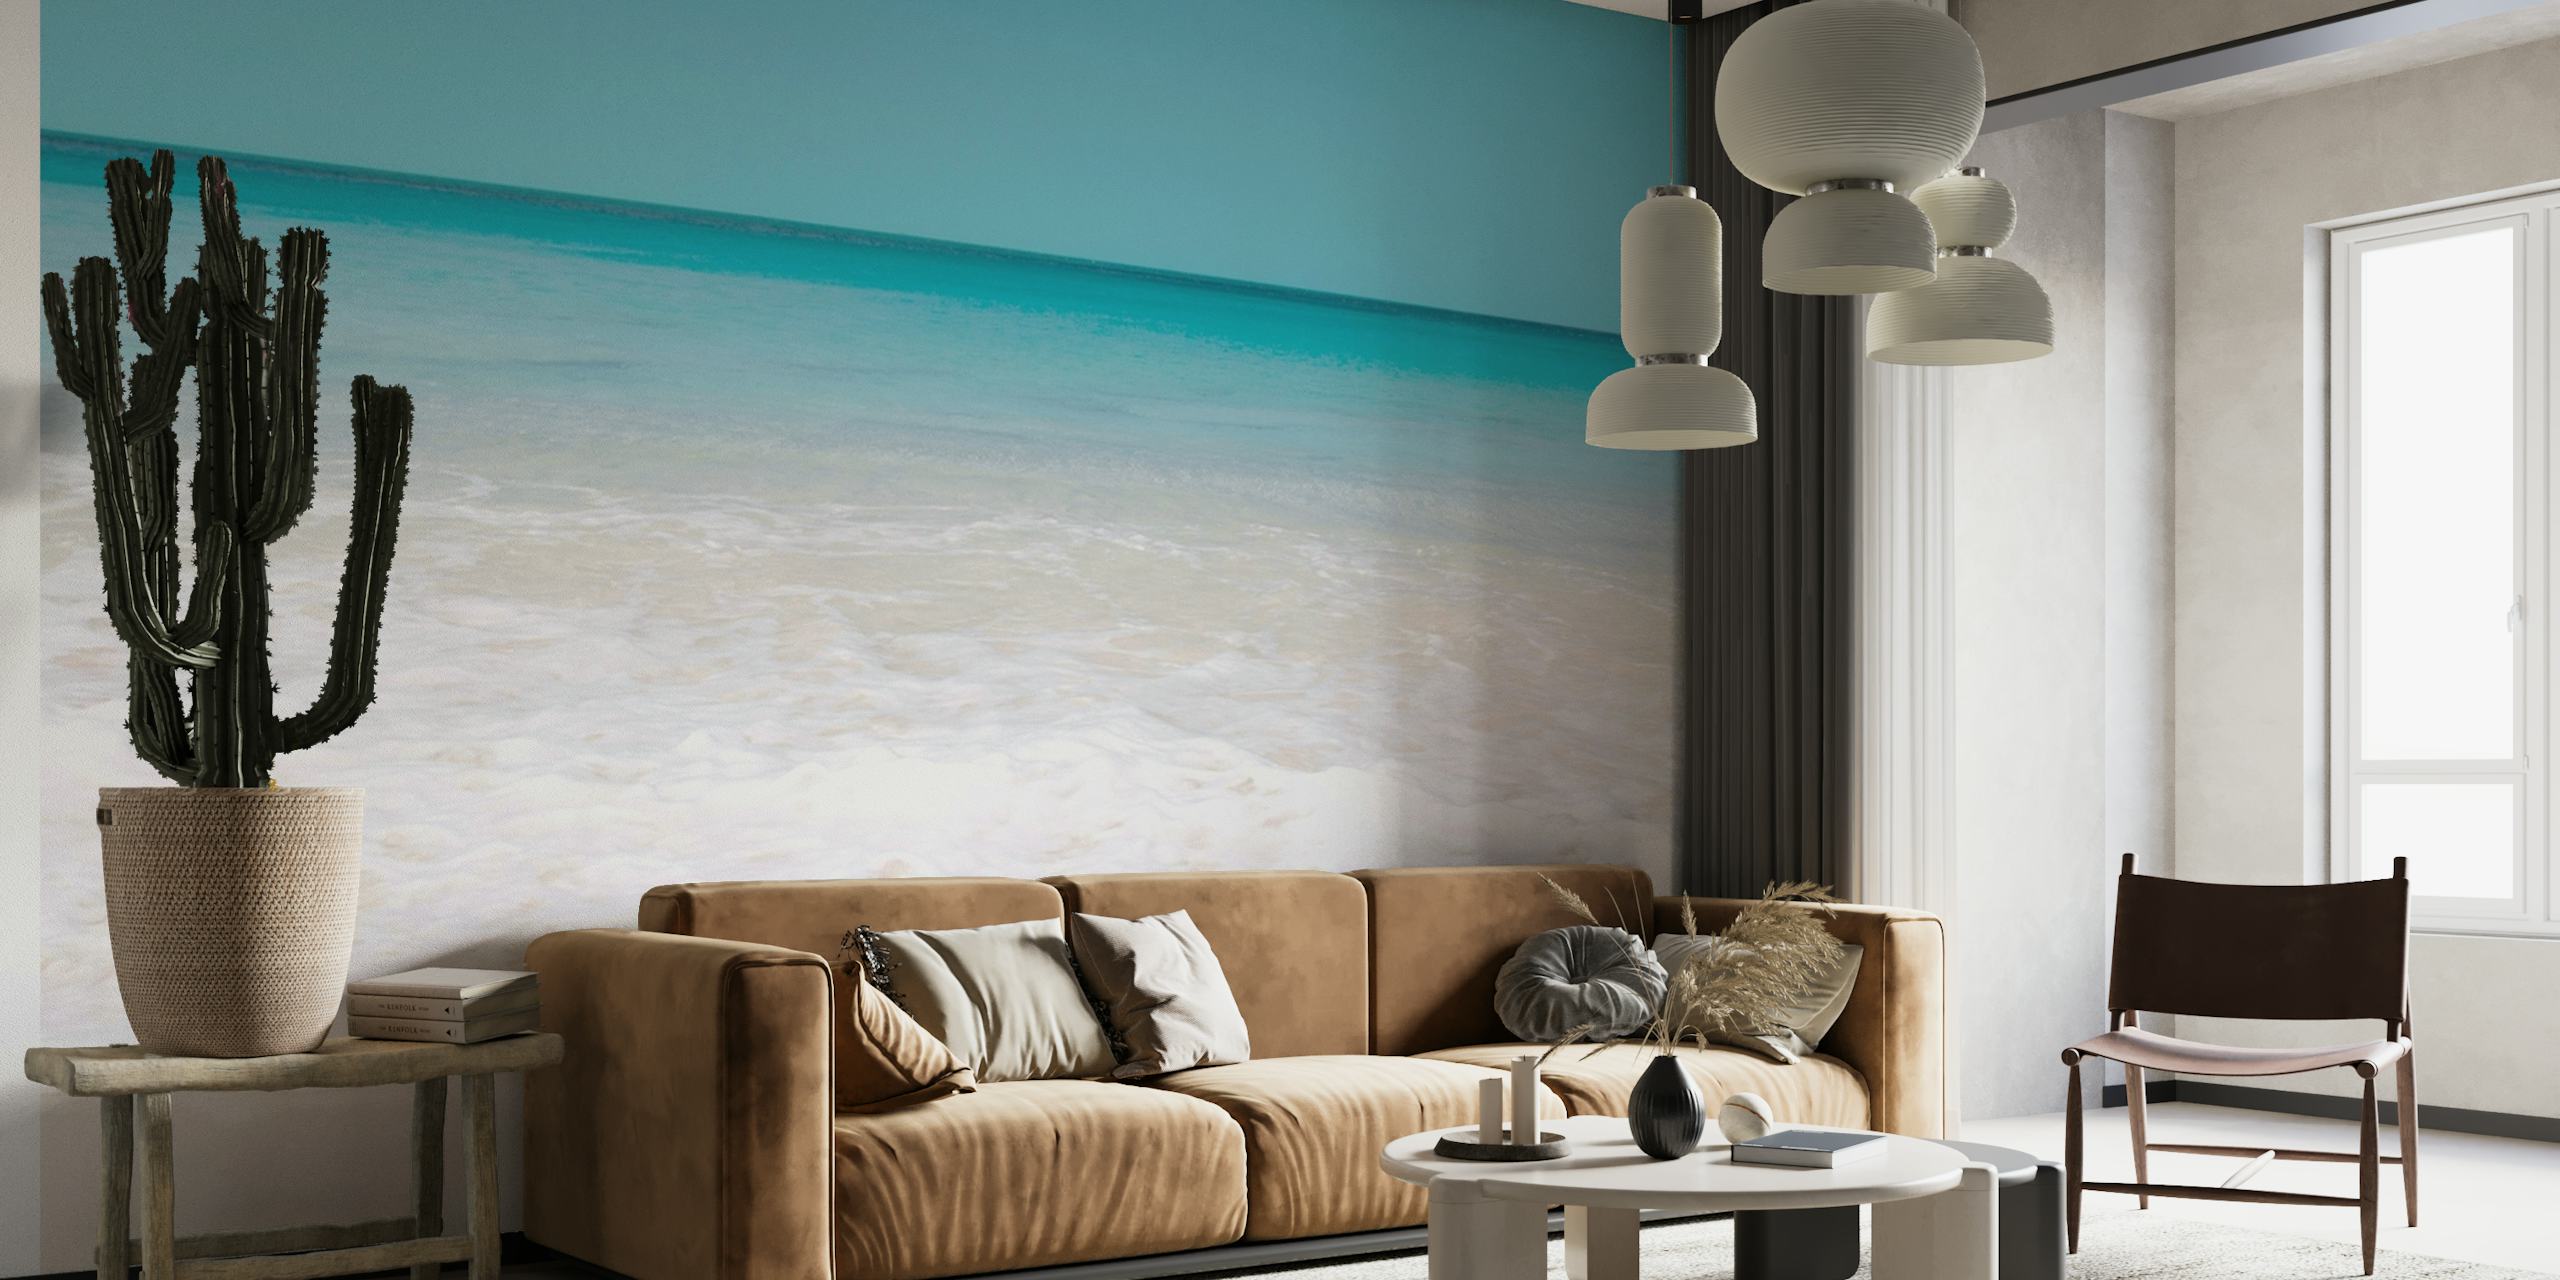 Mural de parede de praia caribenha mostrando areias brancas e águas azul-turquesa do oceano